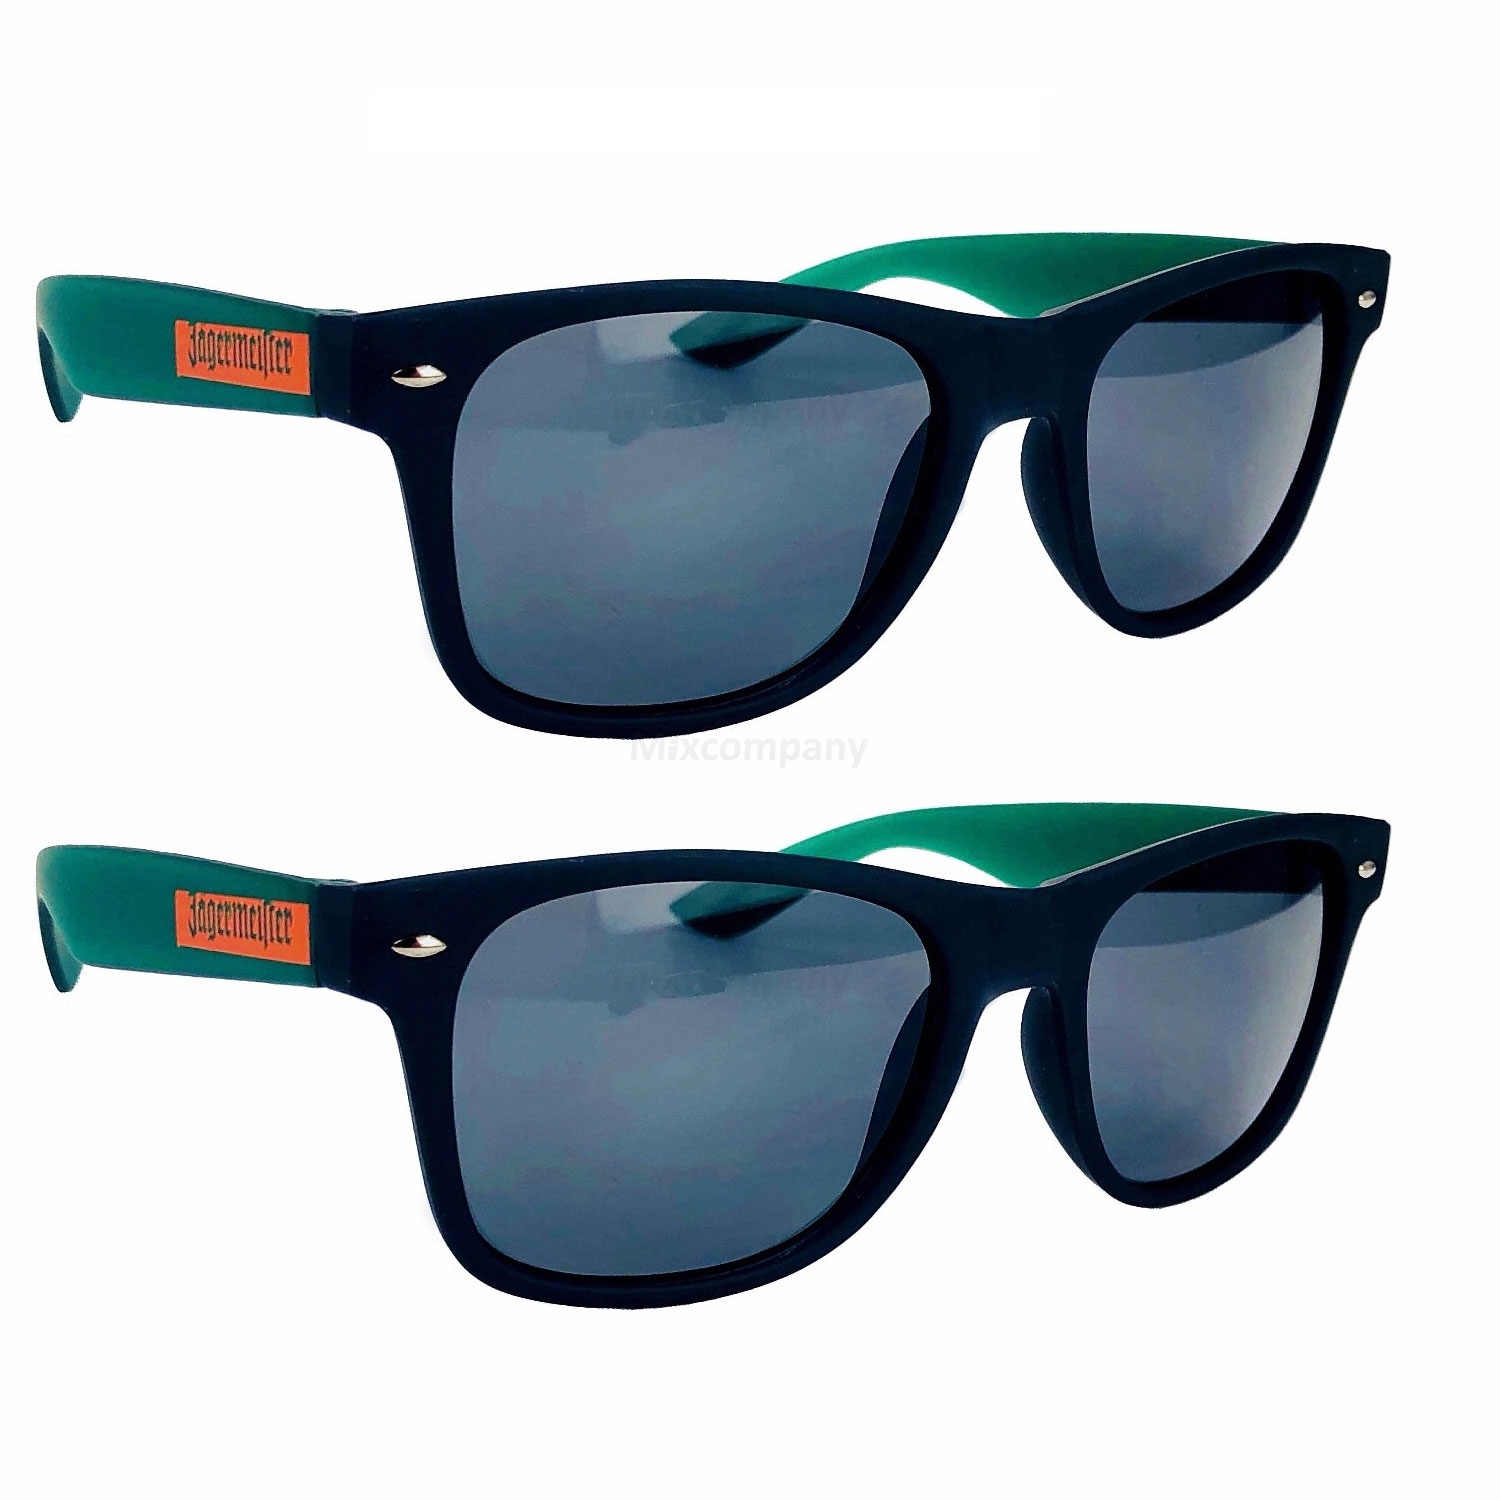 Jägermeister Sonnenbrille Nerd-, Party-, Brille in schwarz grün Aktion - 2 Stück